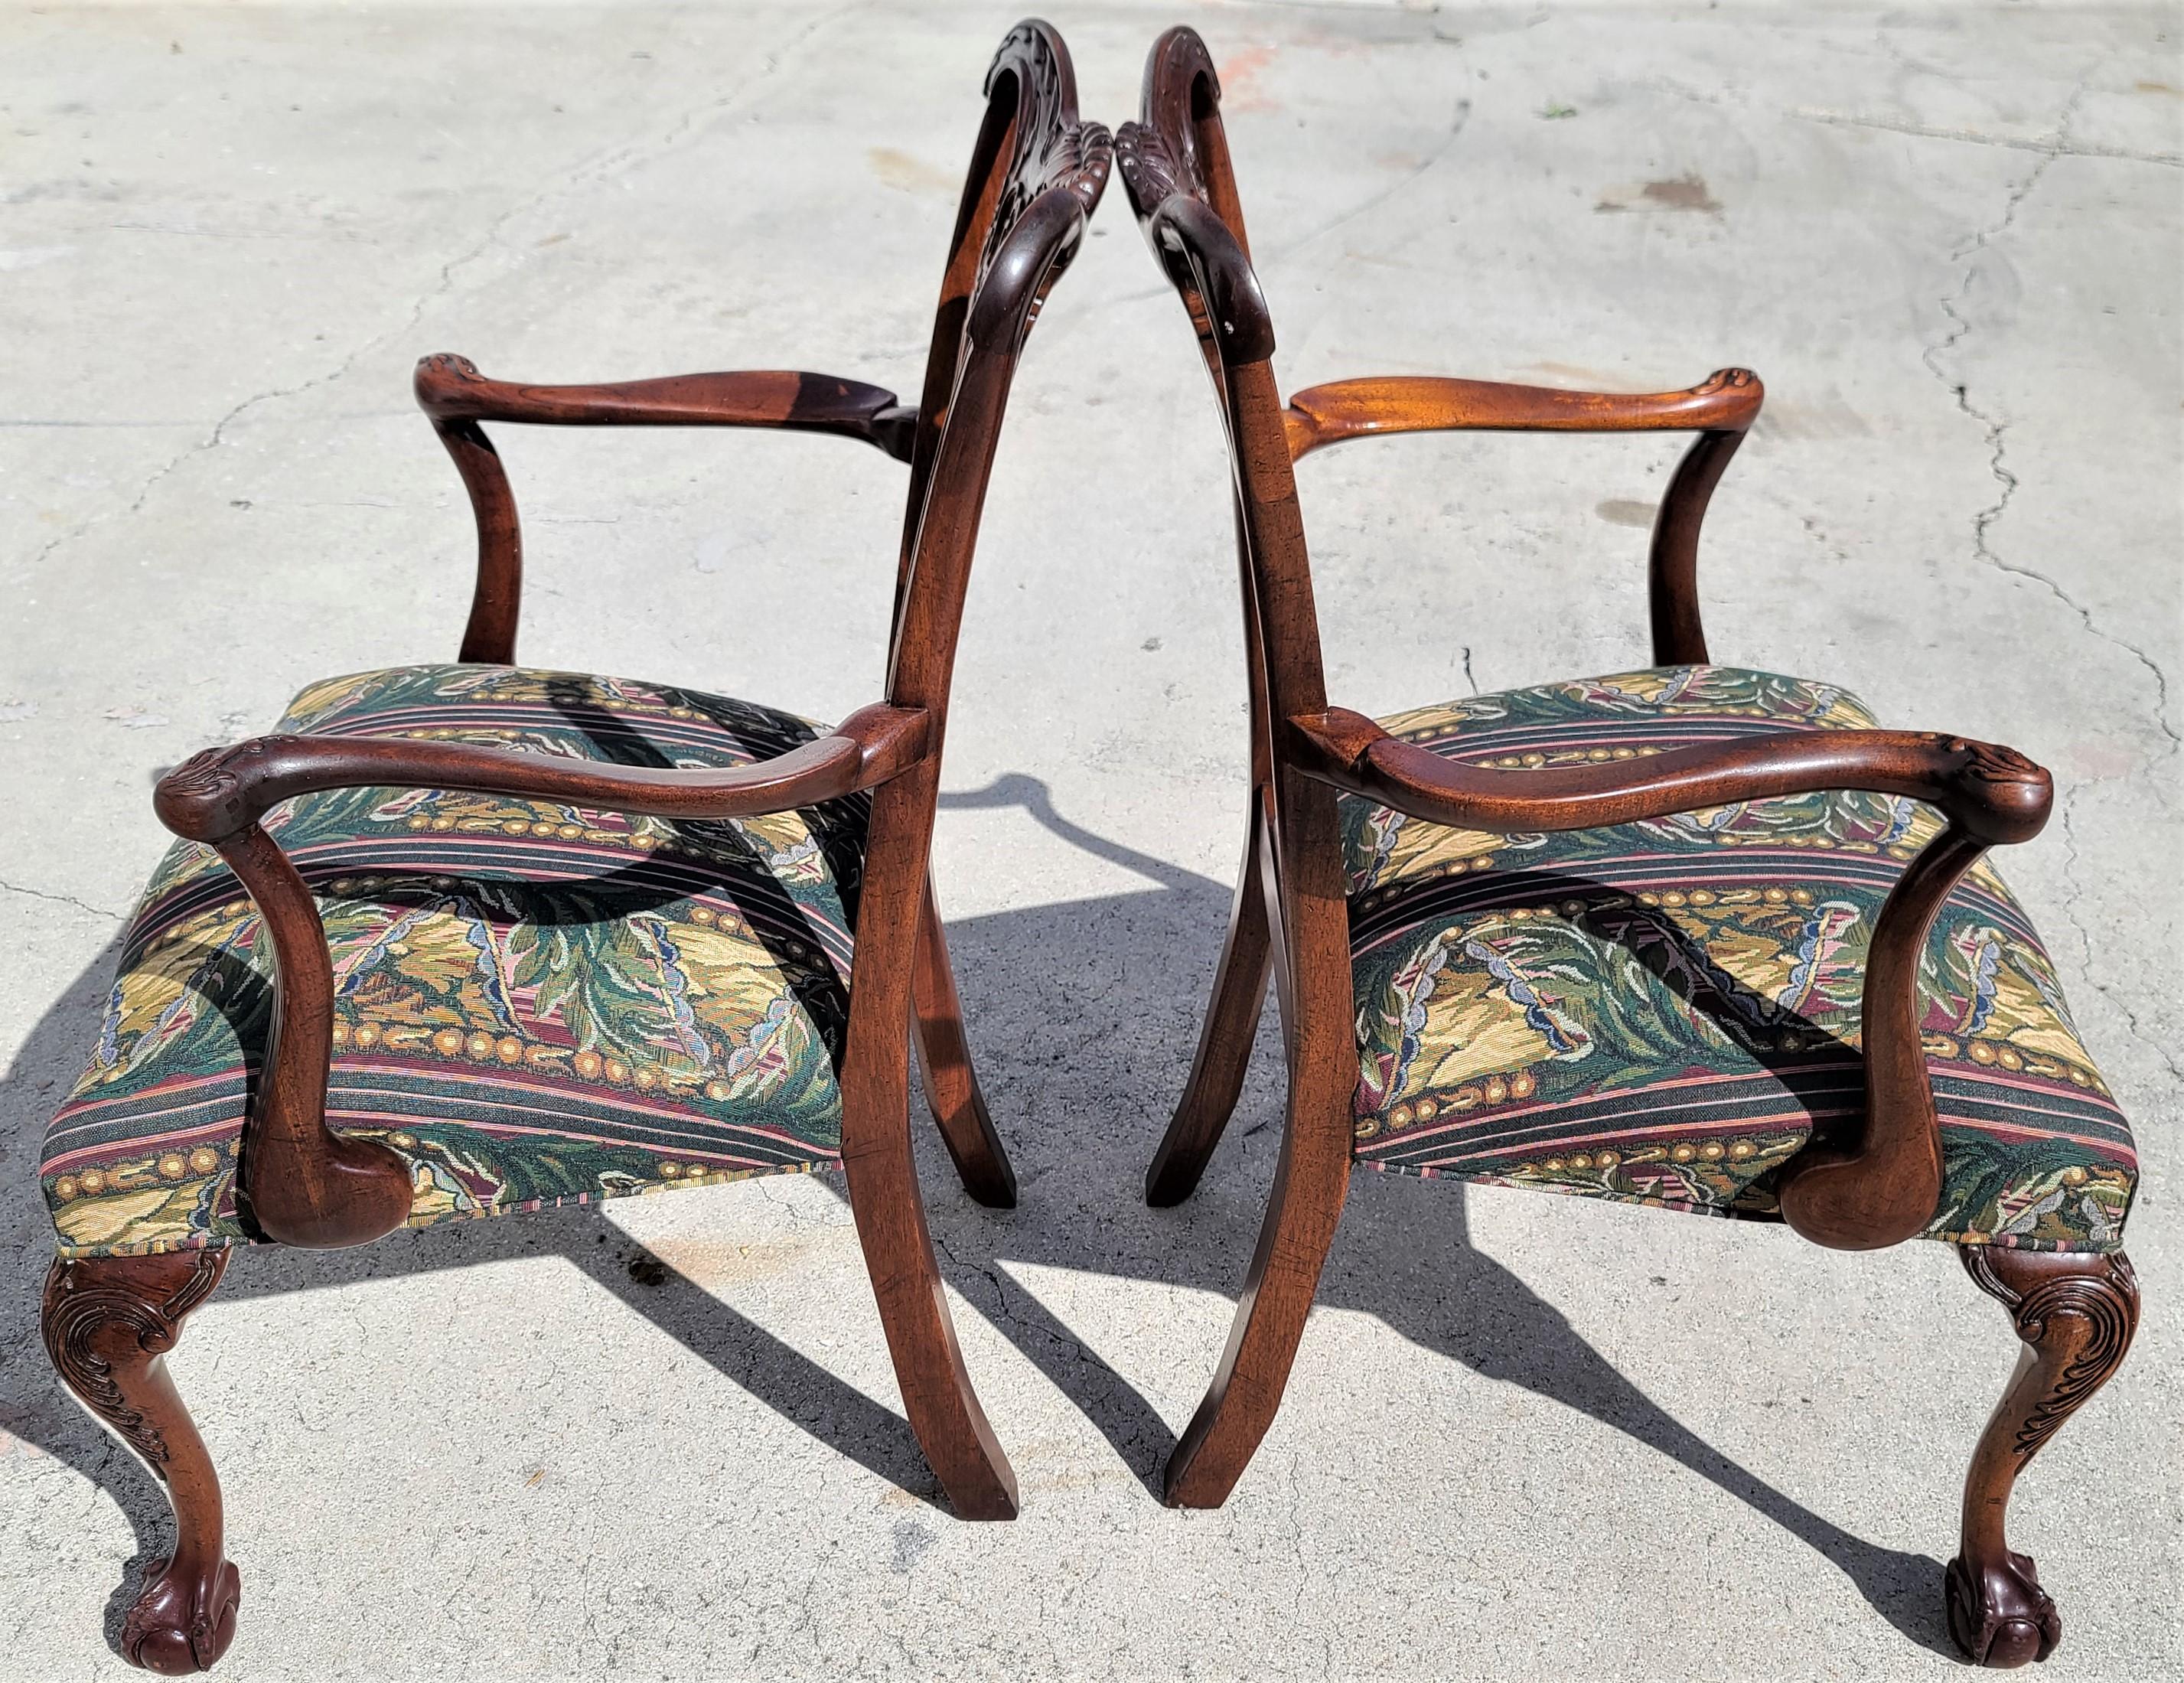 Wir bieten einen unserer jüngsten Palm Beach Estate Fine furniture Erwerb eines
Paar antike um 1900 Edwardianische Chippendale Sessel aus Mahagoni mit Kugel und Kralle

Ungefähre Maße in Zoll
37.5